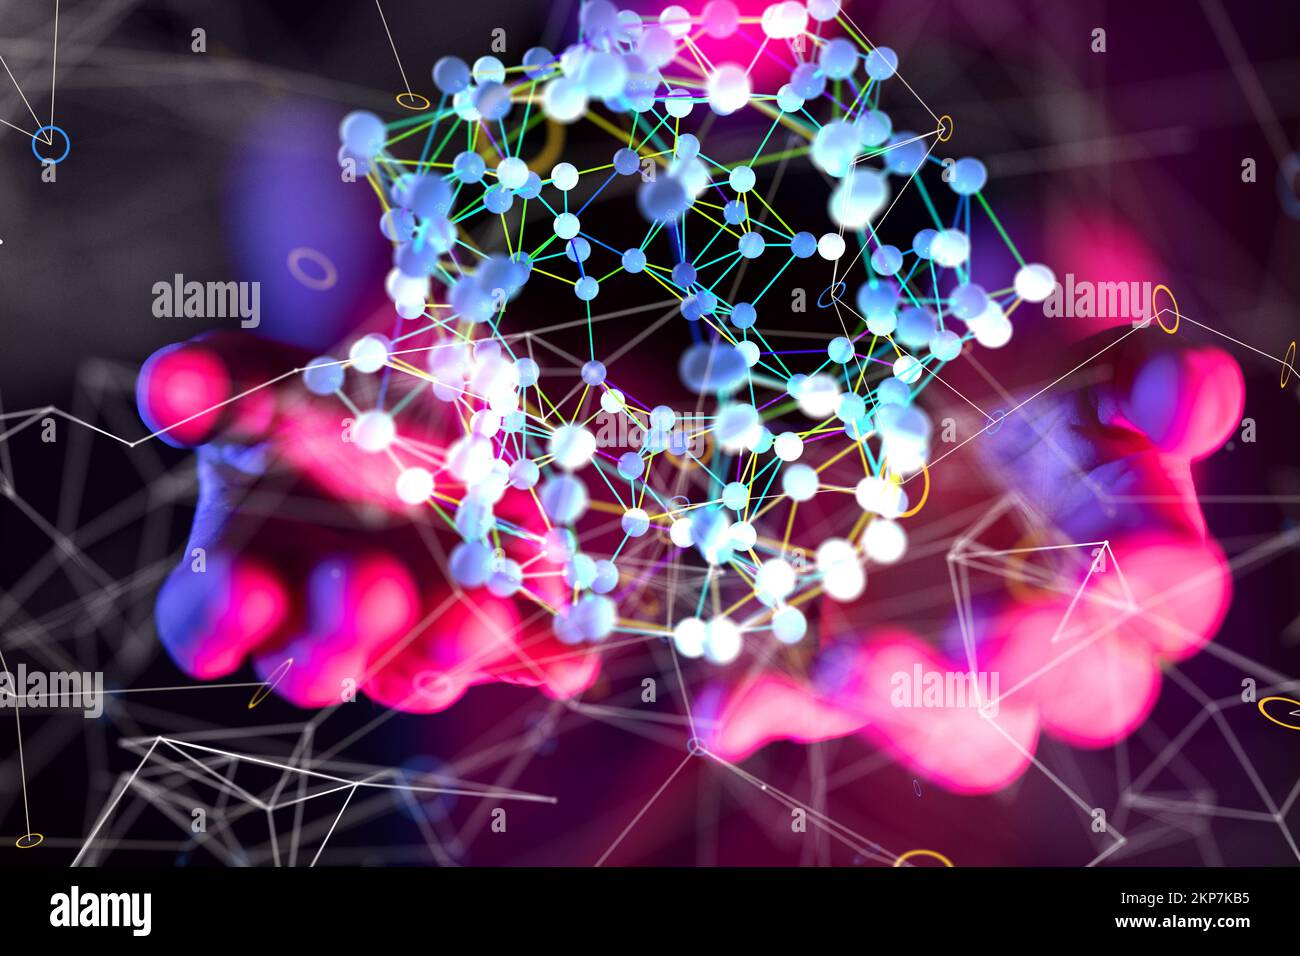 Ein 3D-Rendering neuronaler Netzwerke, Blockchains - Globales Netzwerkkonzept Stockfoto